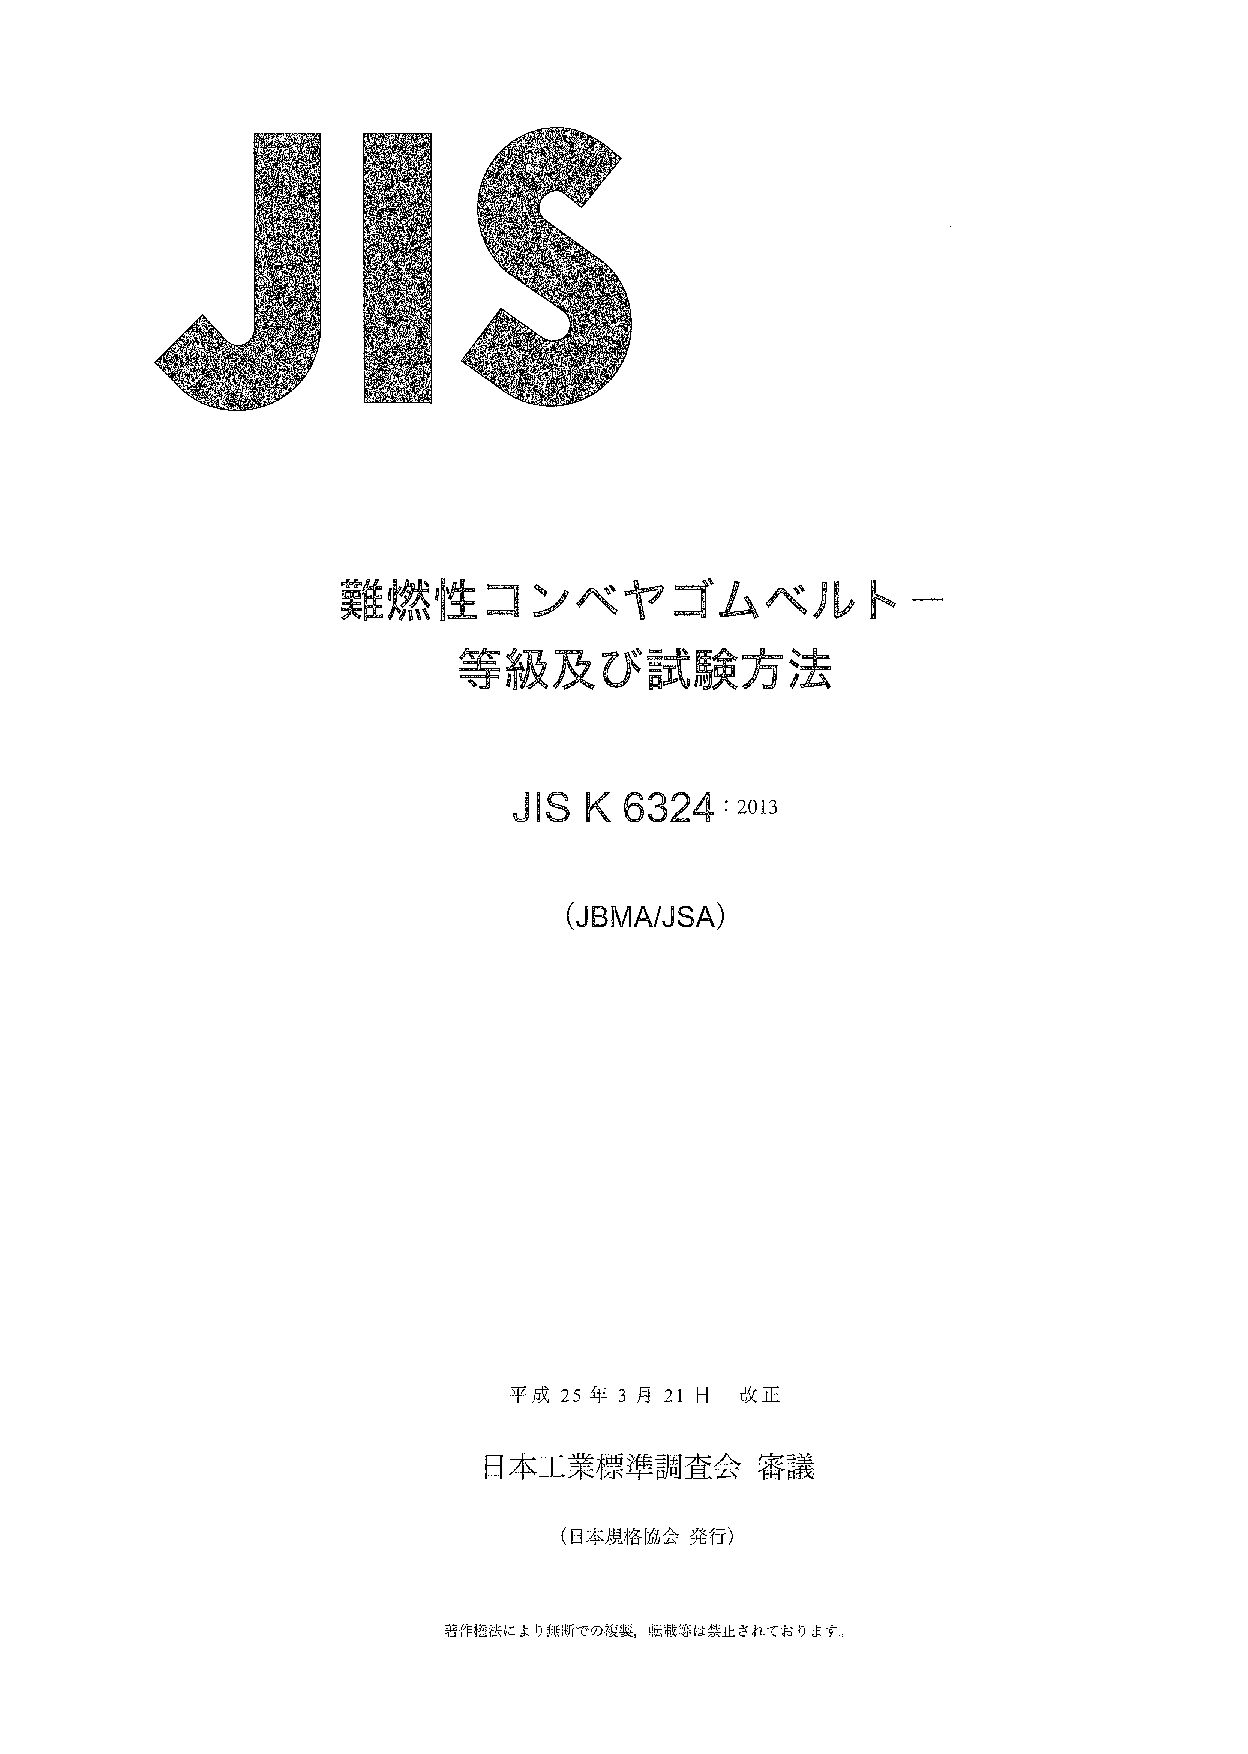 JIS K 6324:2013封面图